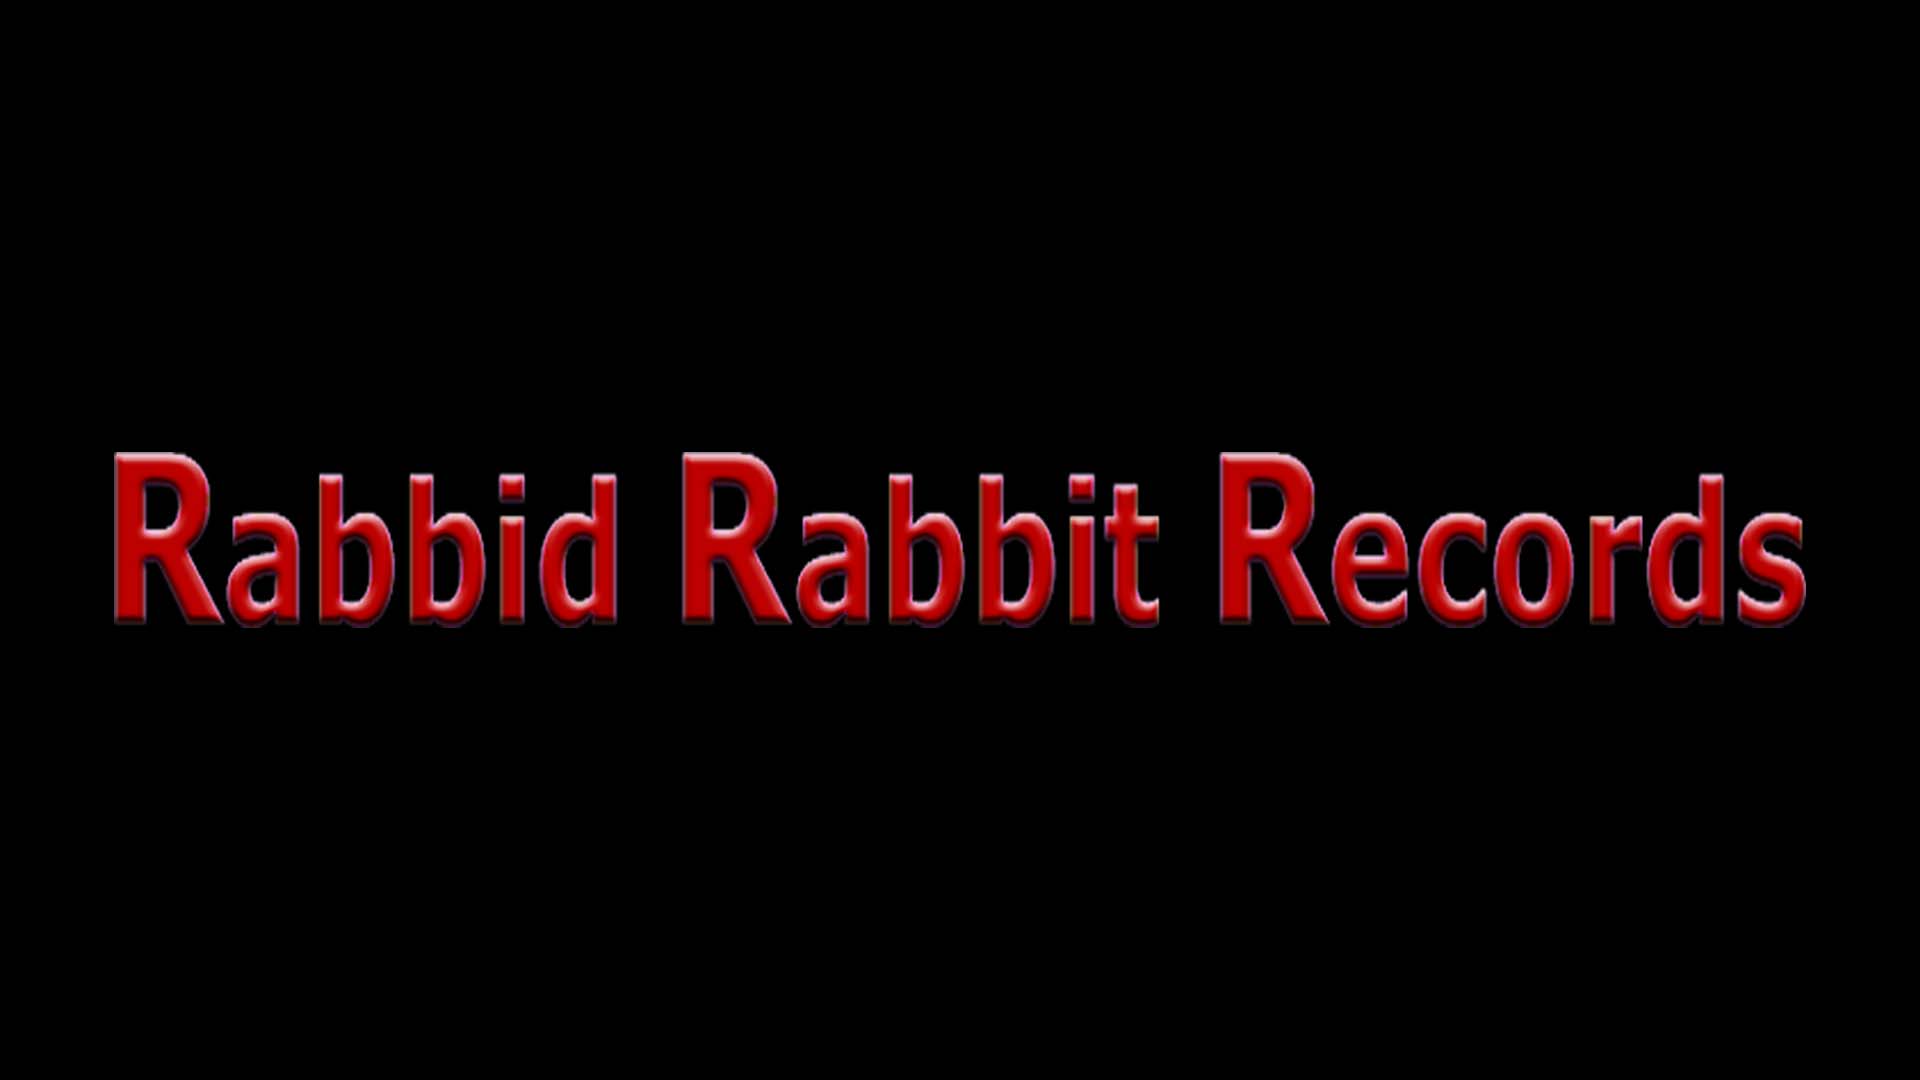 Rabbid Rabbit Records